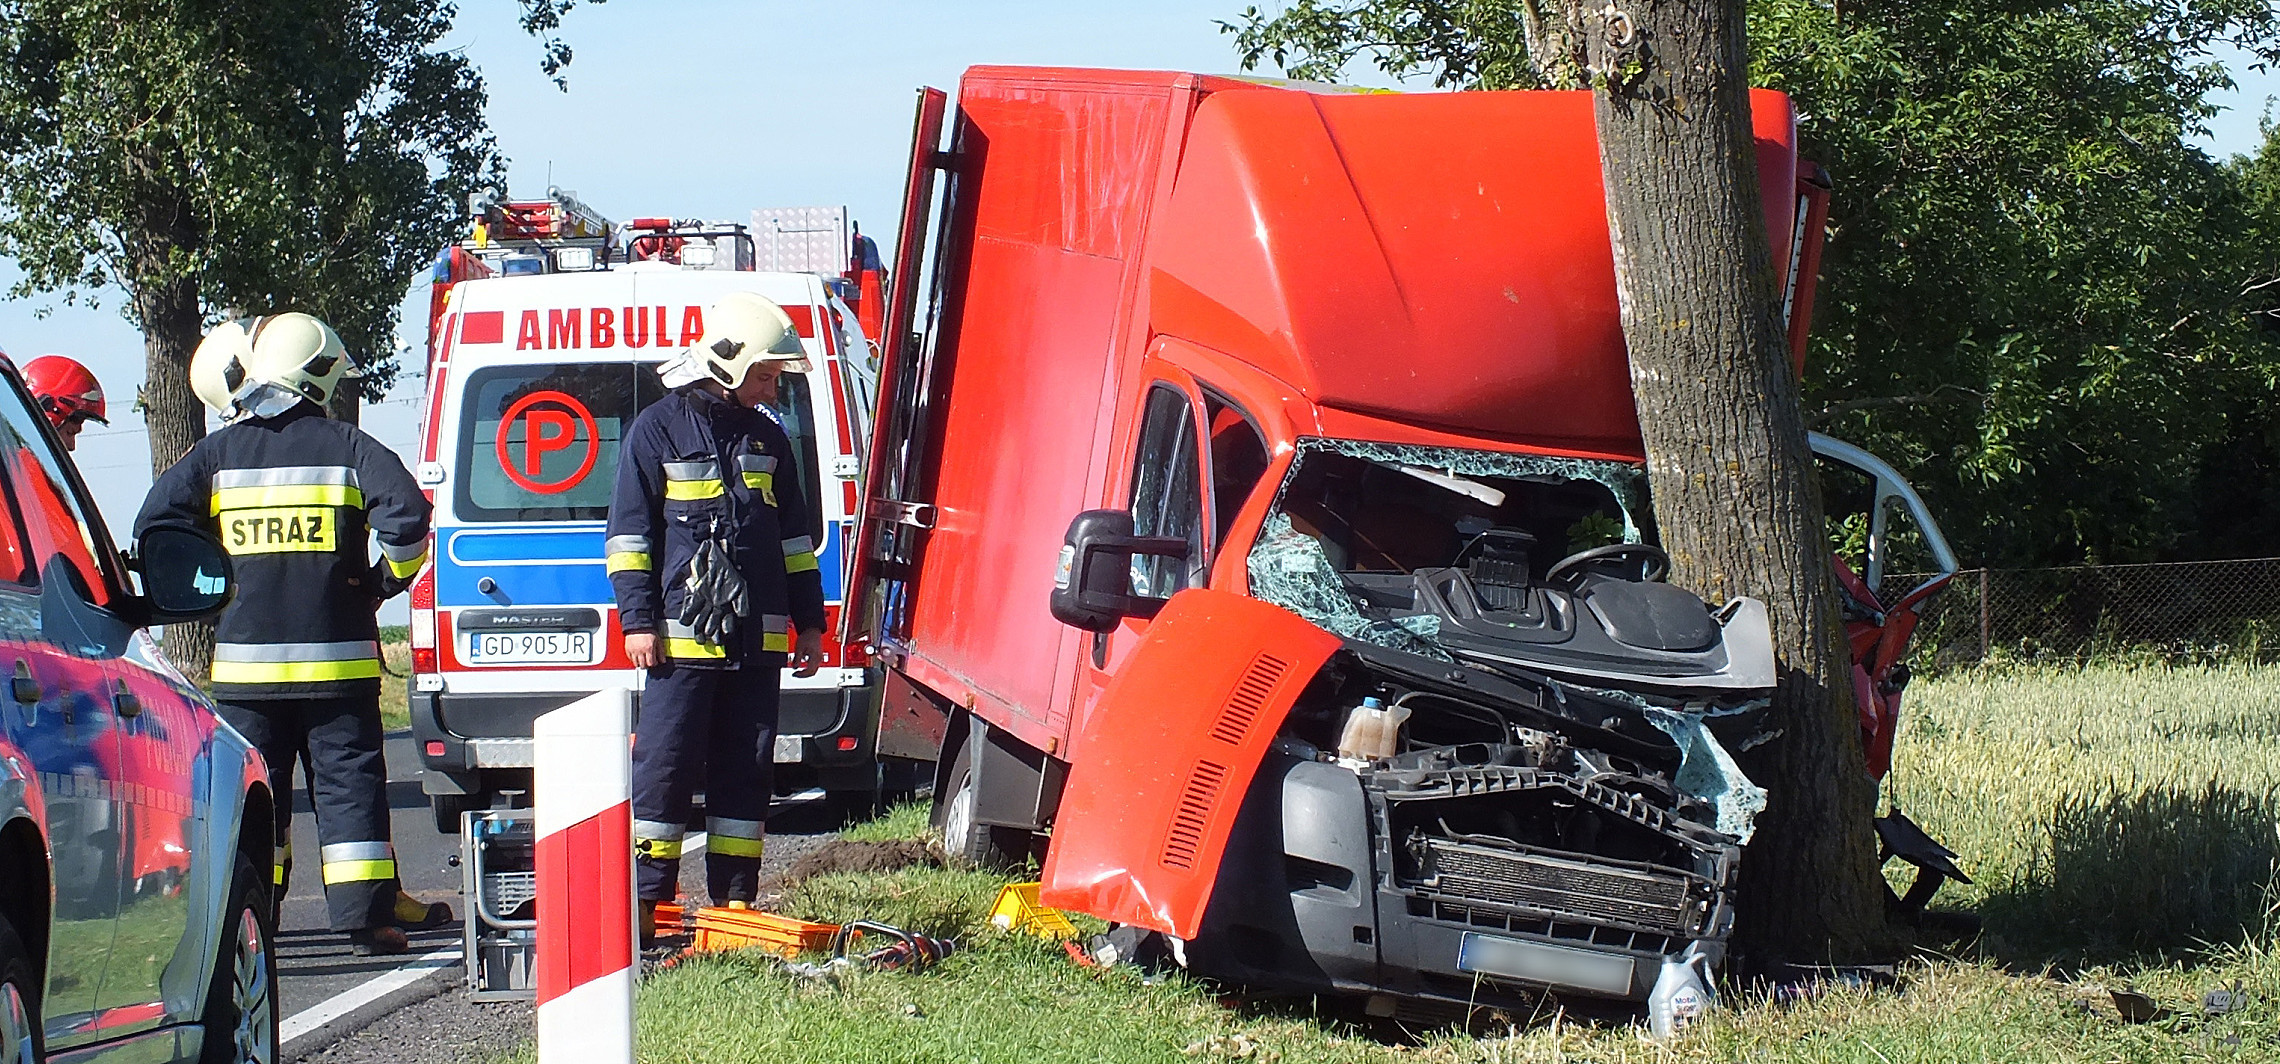 Inowrocław - Dziś wspominamy ofiary wypadków drogowych